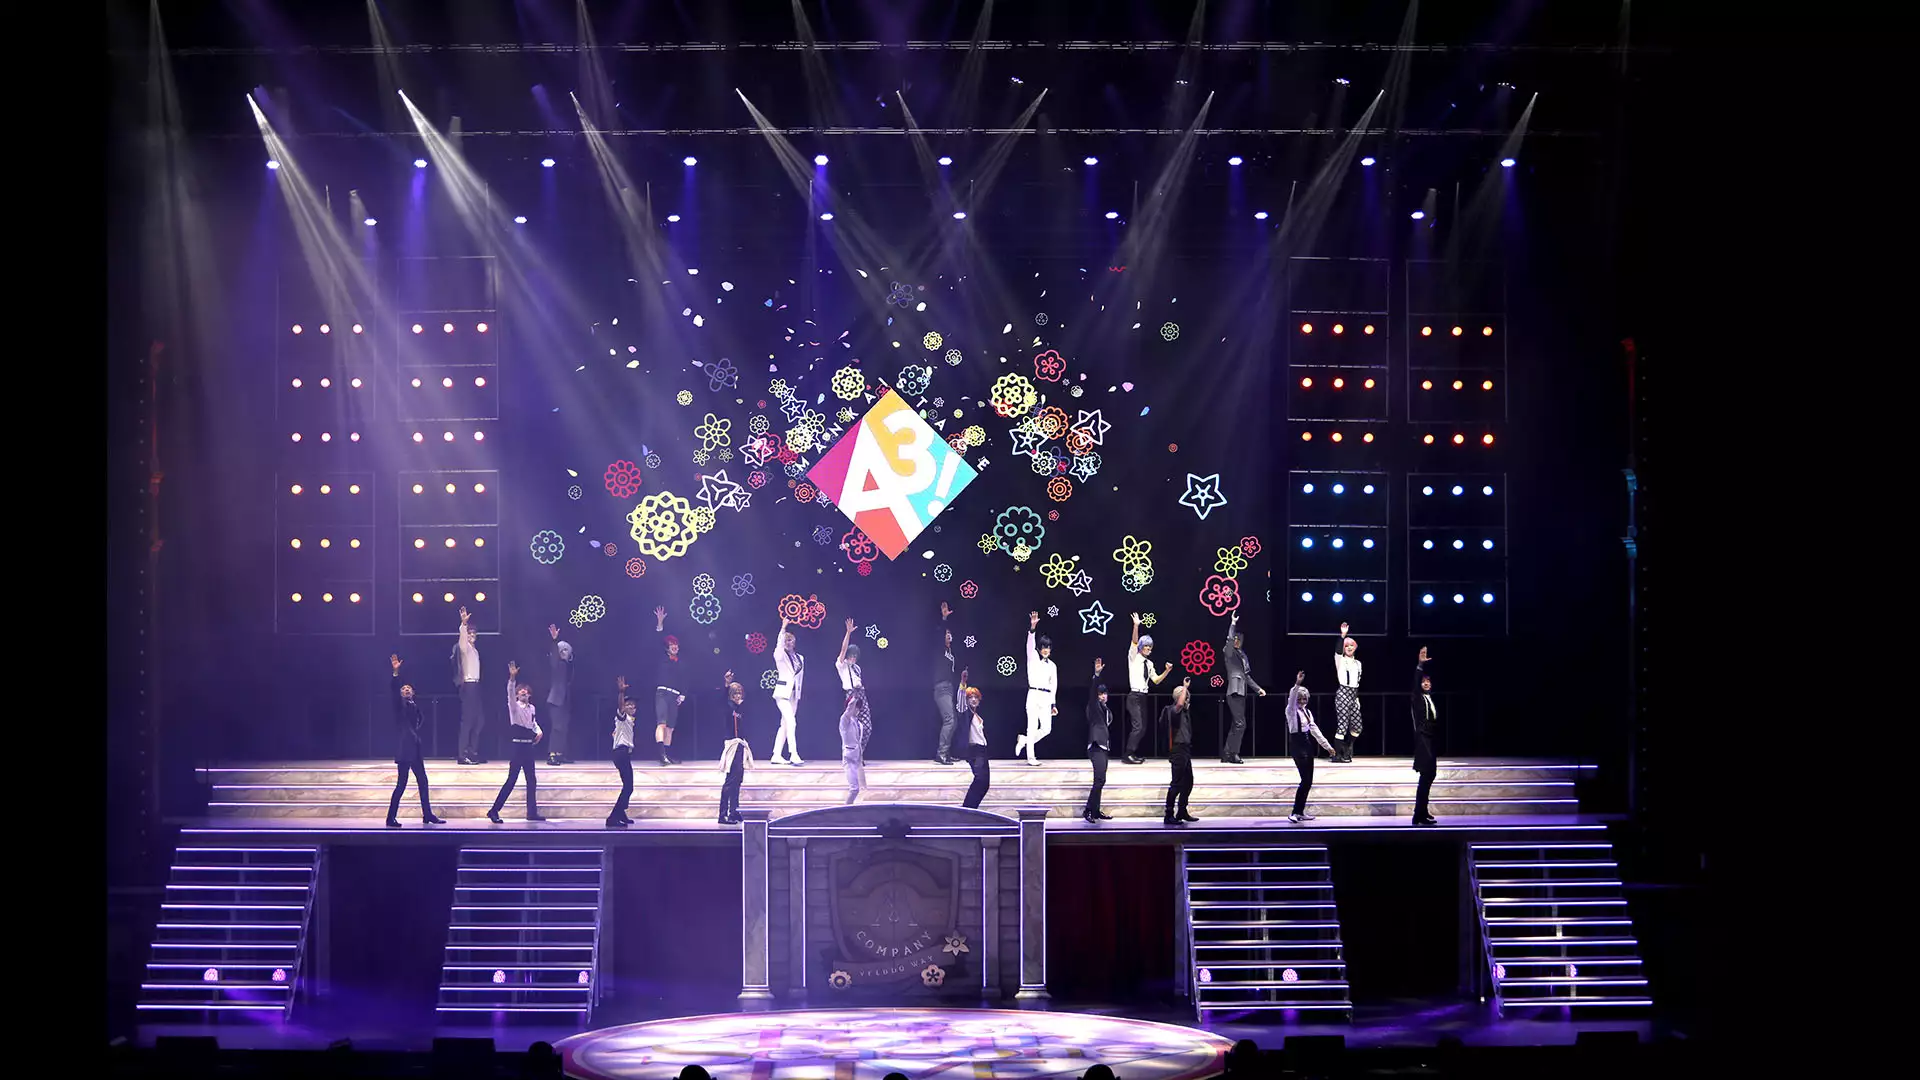 MANKAI STAGE『A3!』～Four Seasons LIVE 2020～【9/18 18:30 公演】